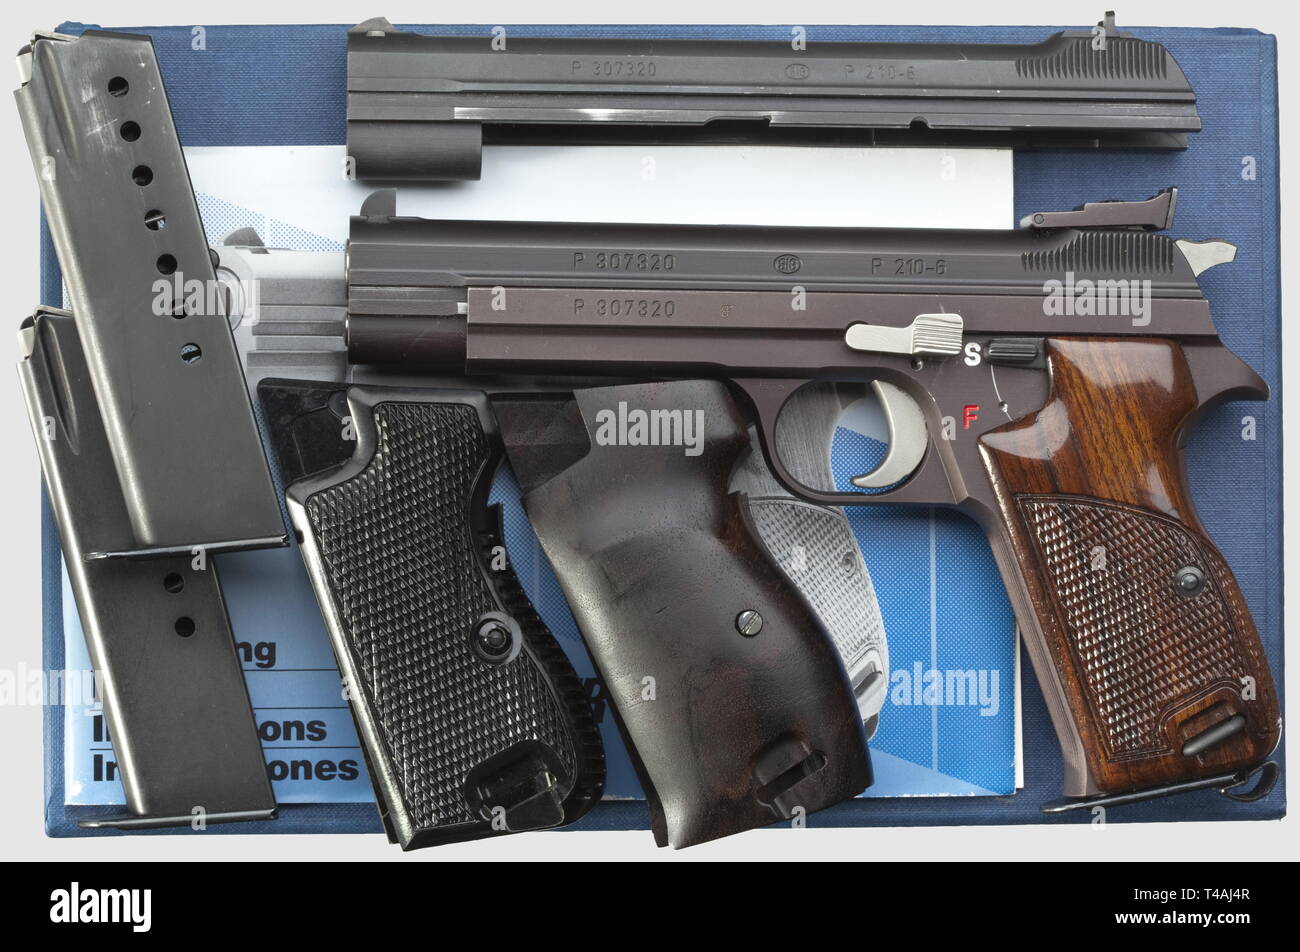 Schießsport, Pistolen, Schweiz, SIG 210-6, Kaliber 9mm, Additional-Rights - Clearance-Info - Not-Available Stockfoto